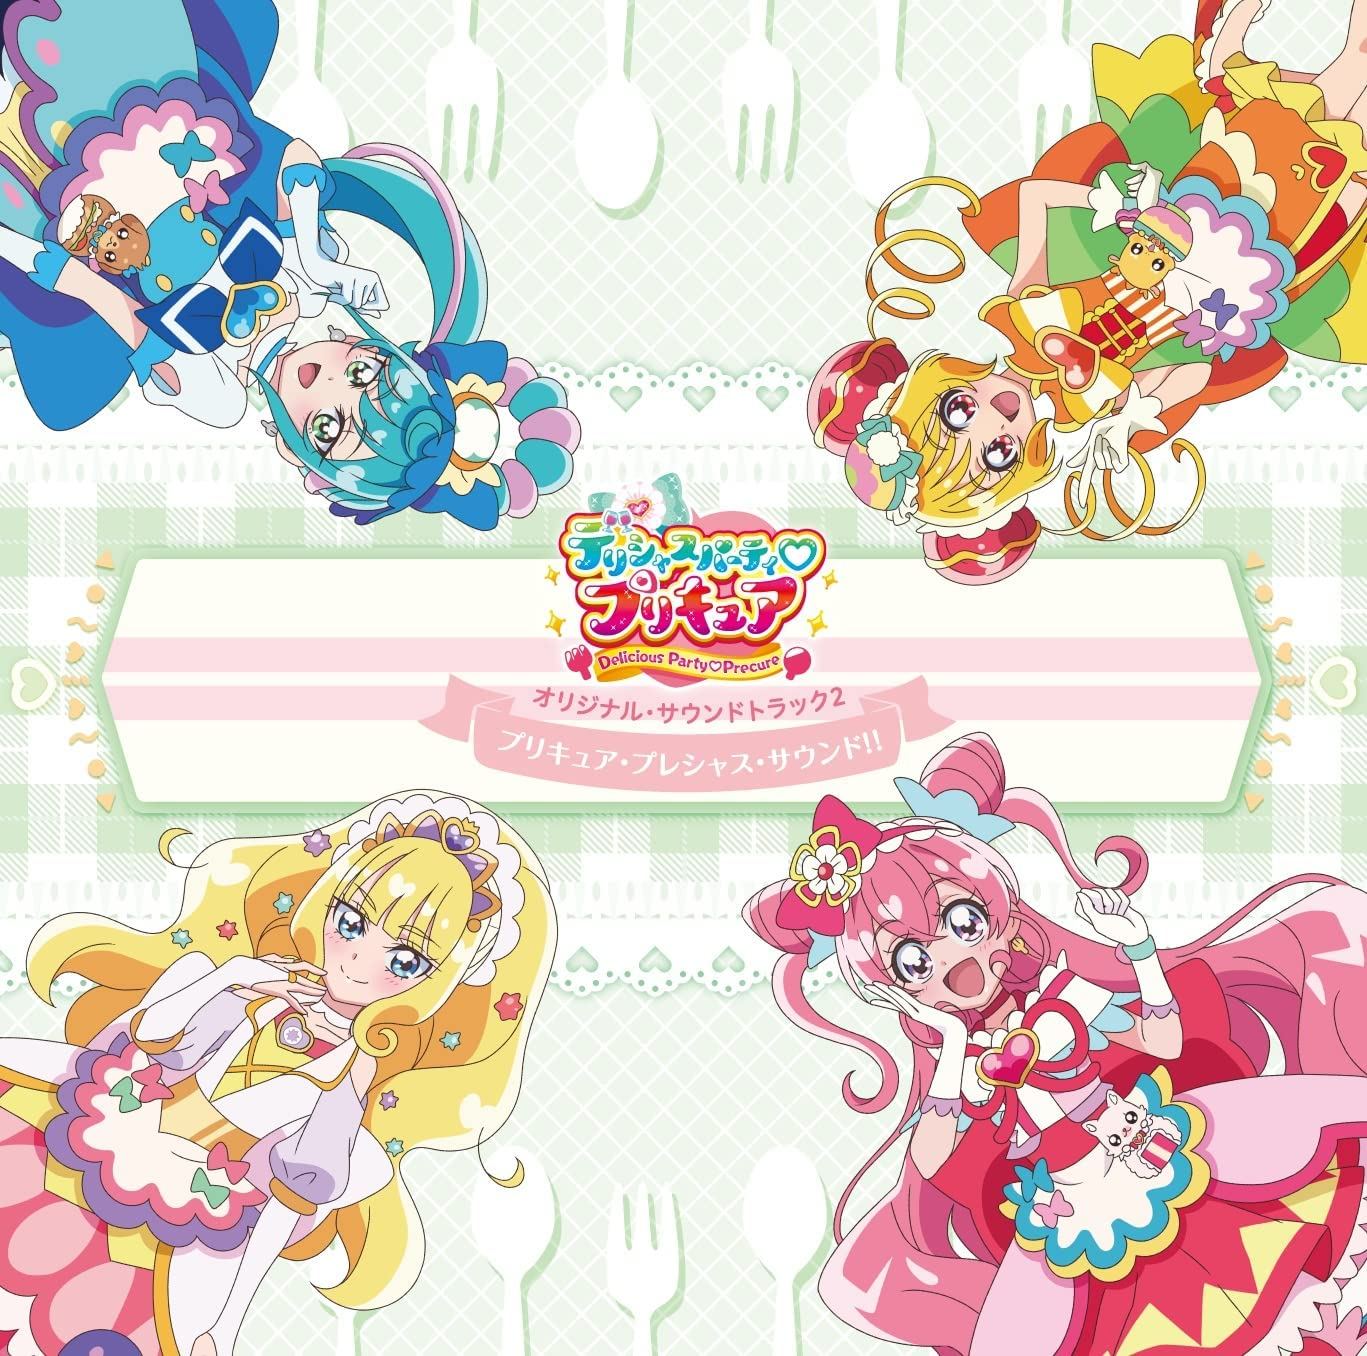 Delicious Party Pretty Cure Original Soundtrack 2 Shiho Terada